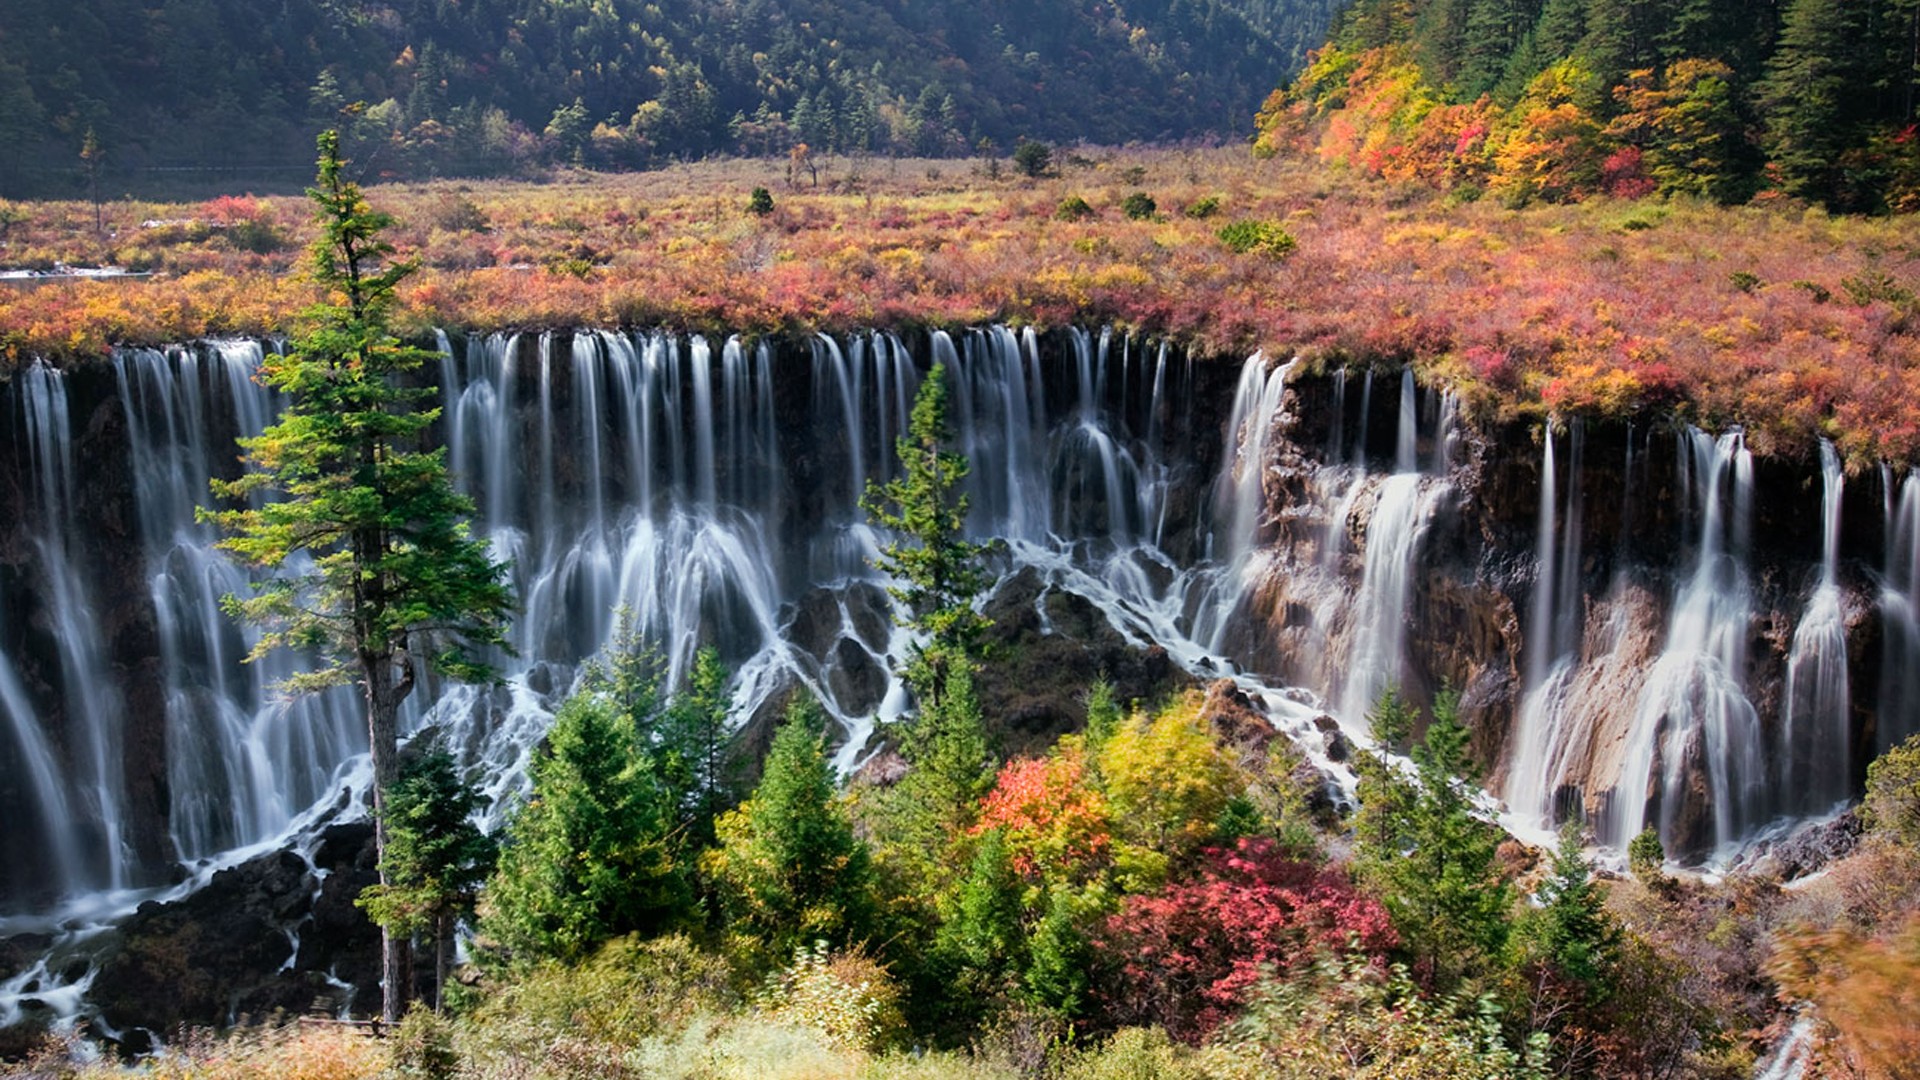 Nuorilang-Waterfall-China